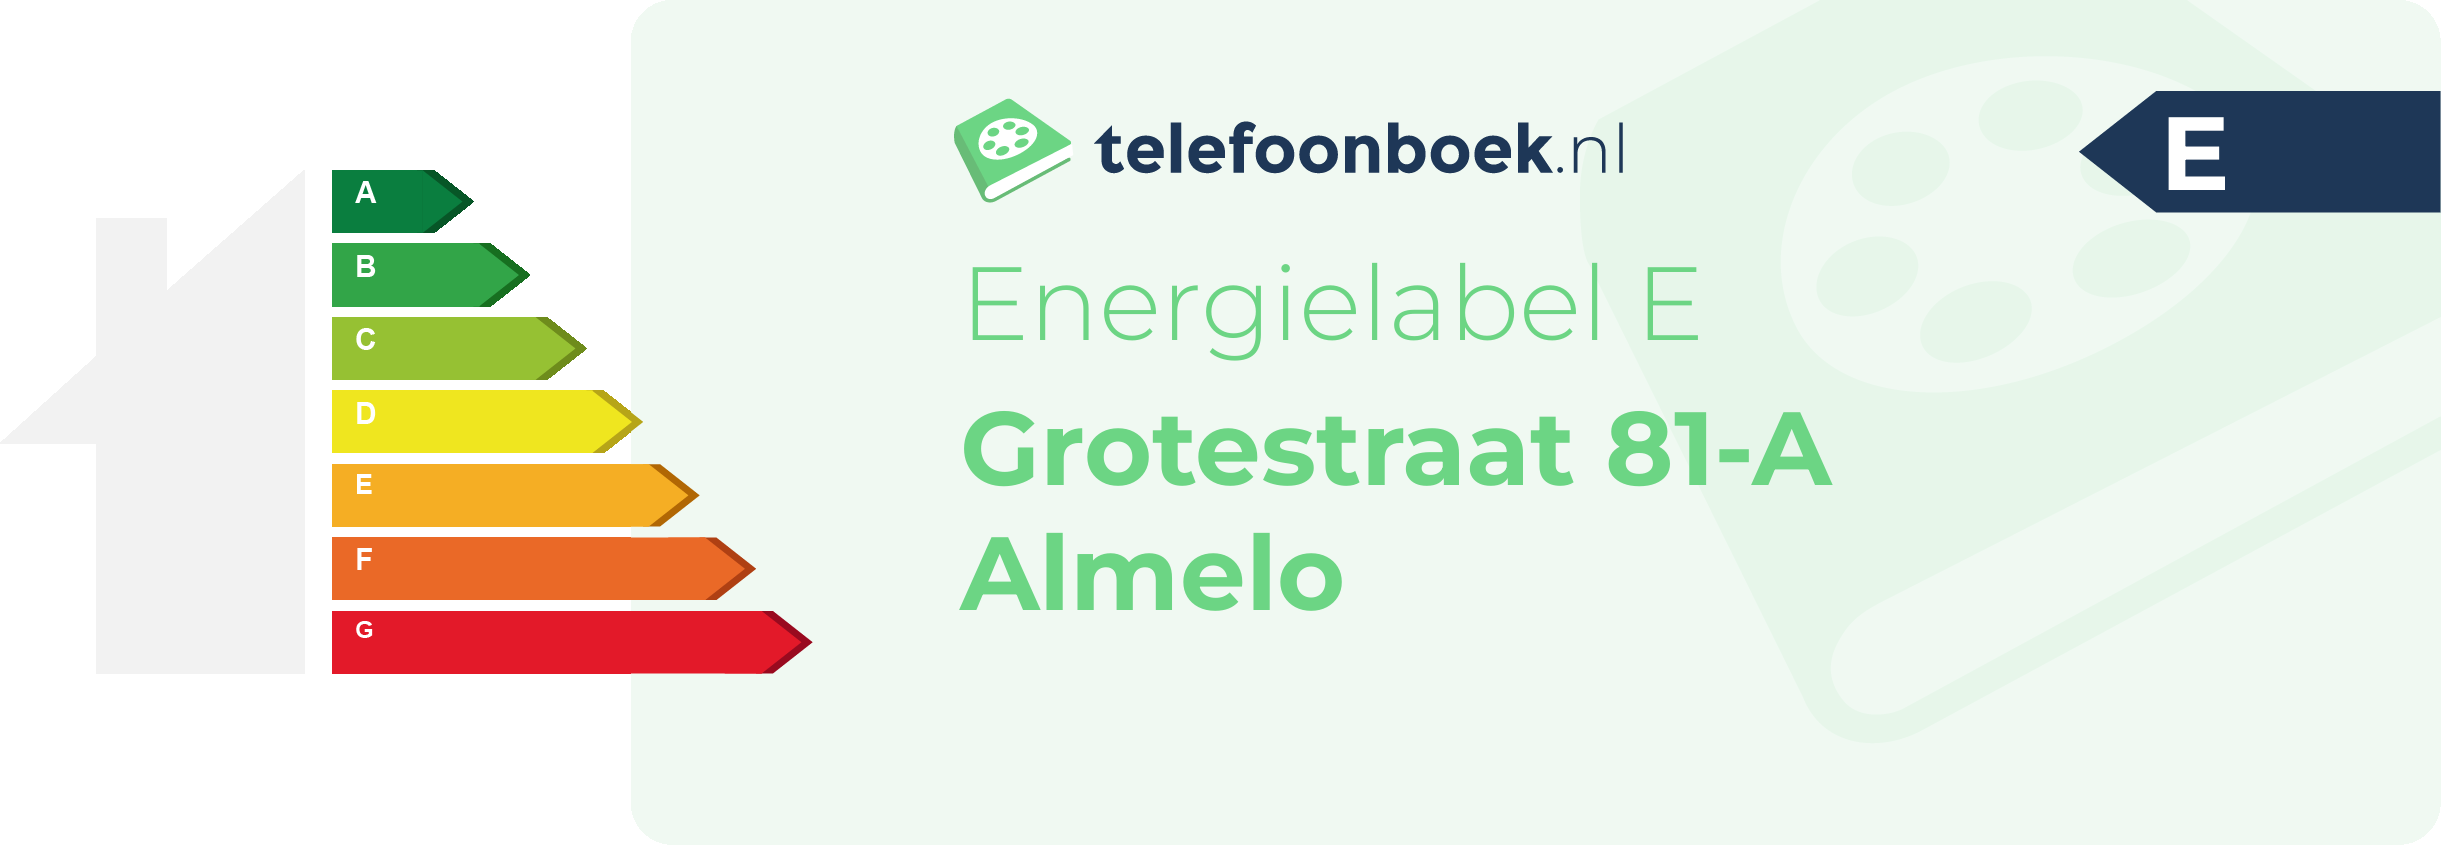 Energielabel Grotestraat 81-A Almelo